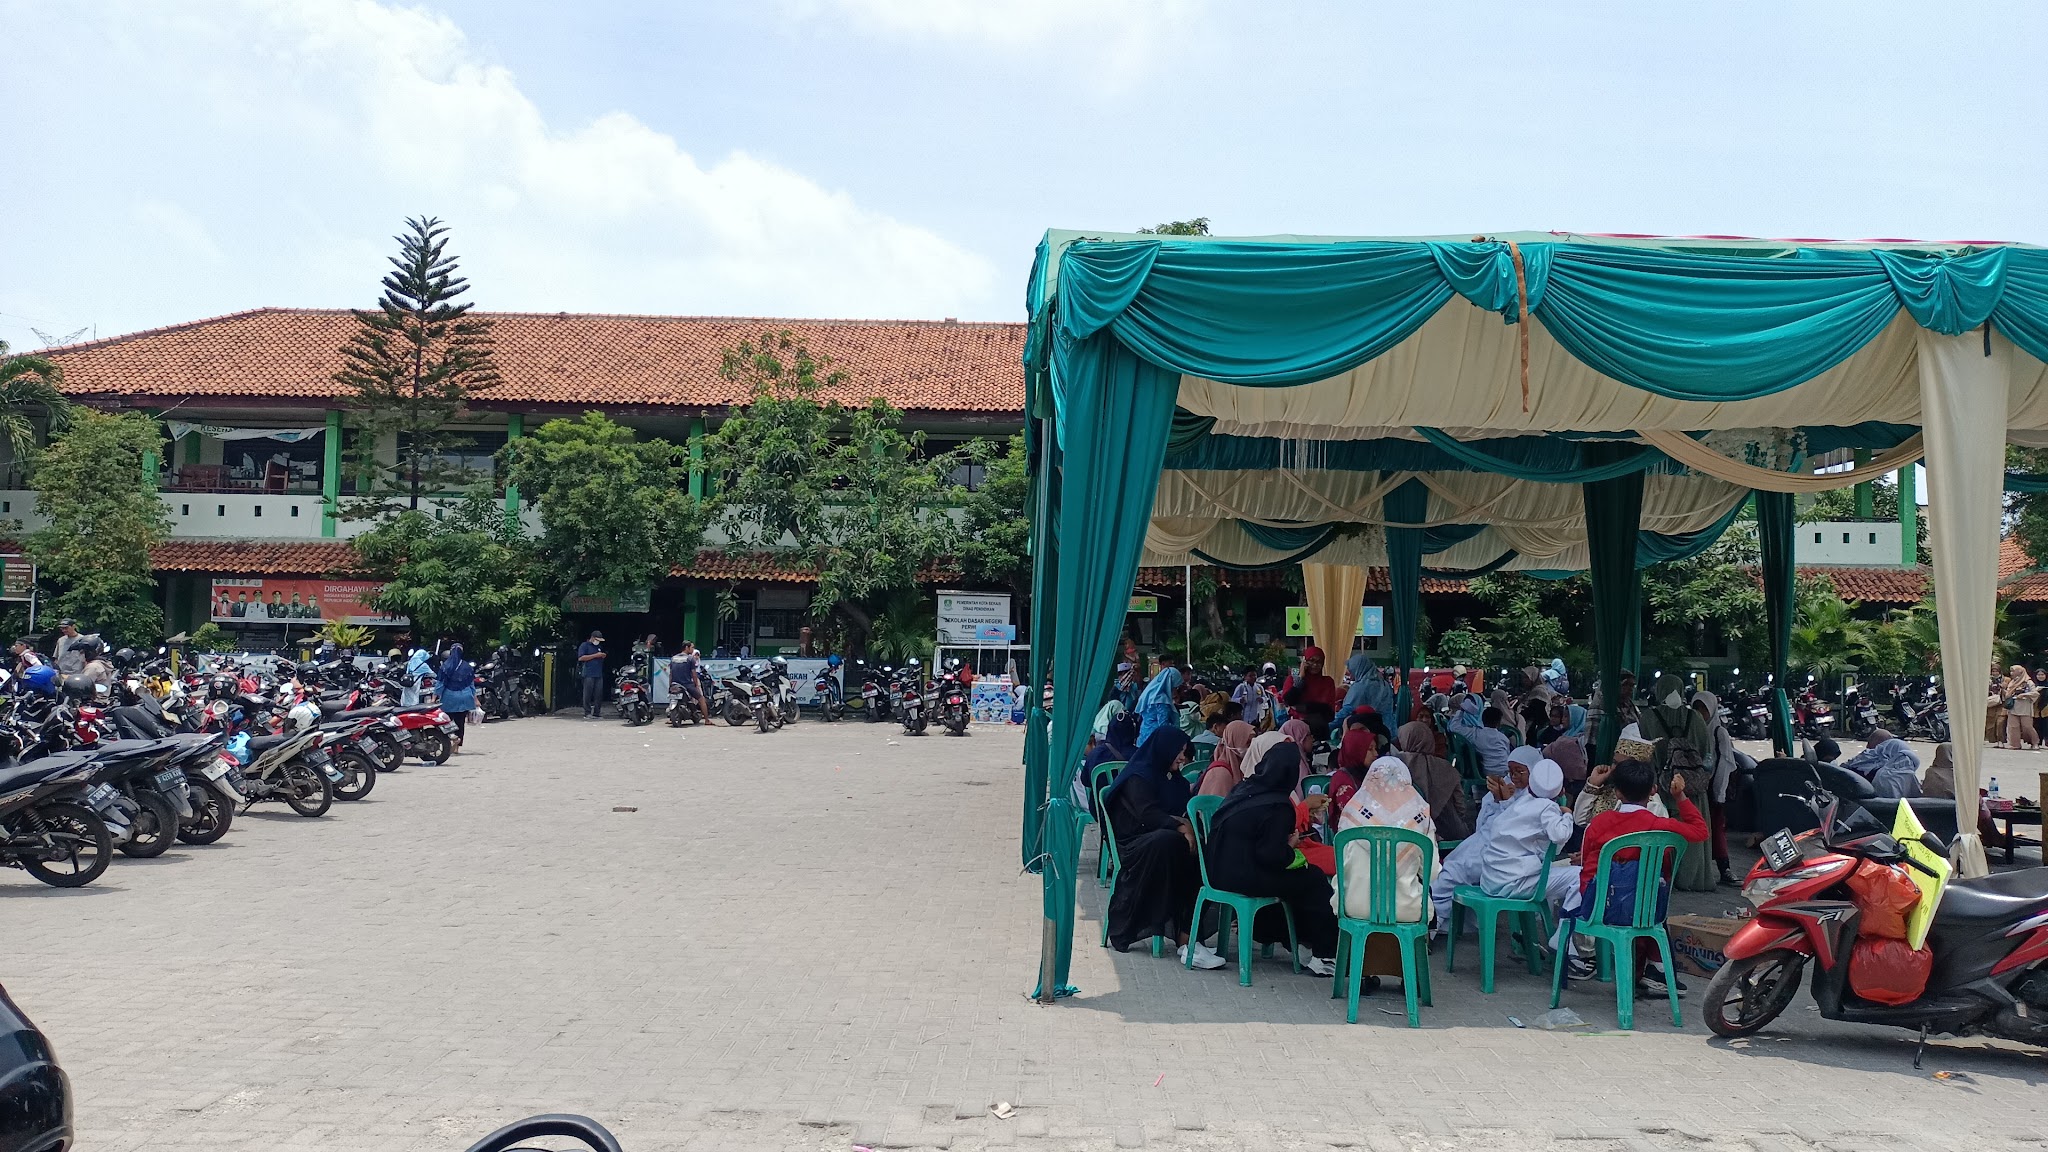 Foto SD  Negeri Perwira 2, Kota Bekasi